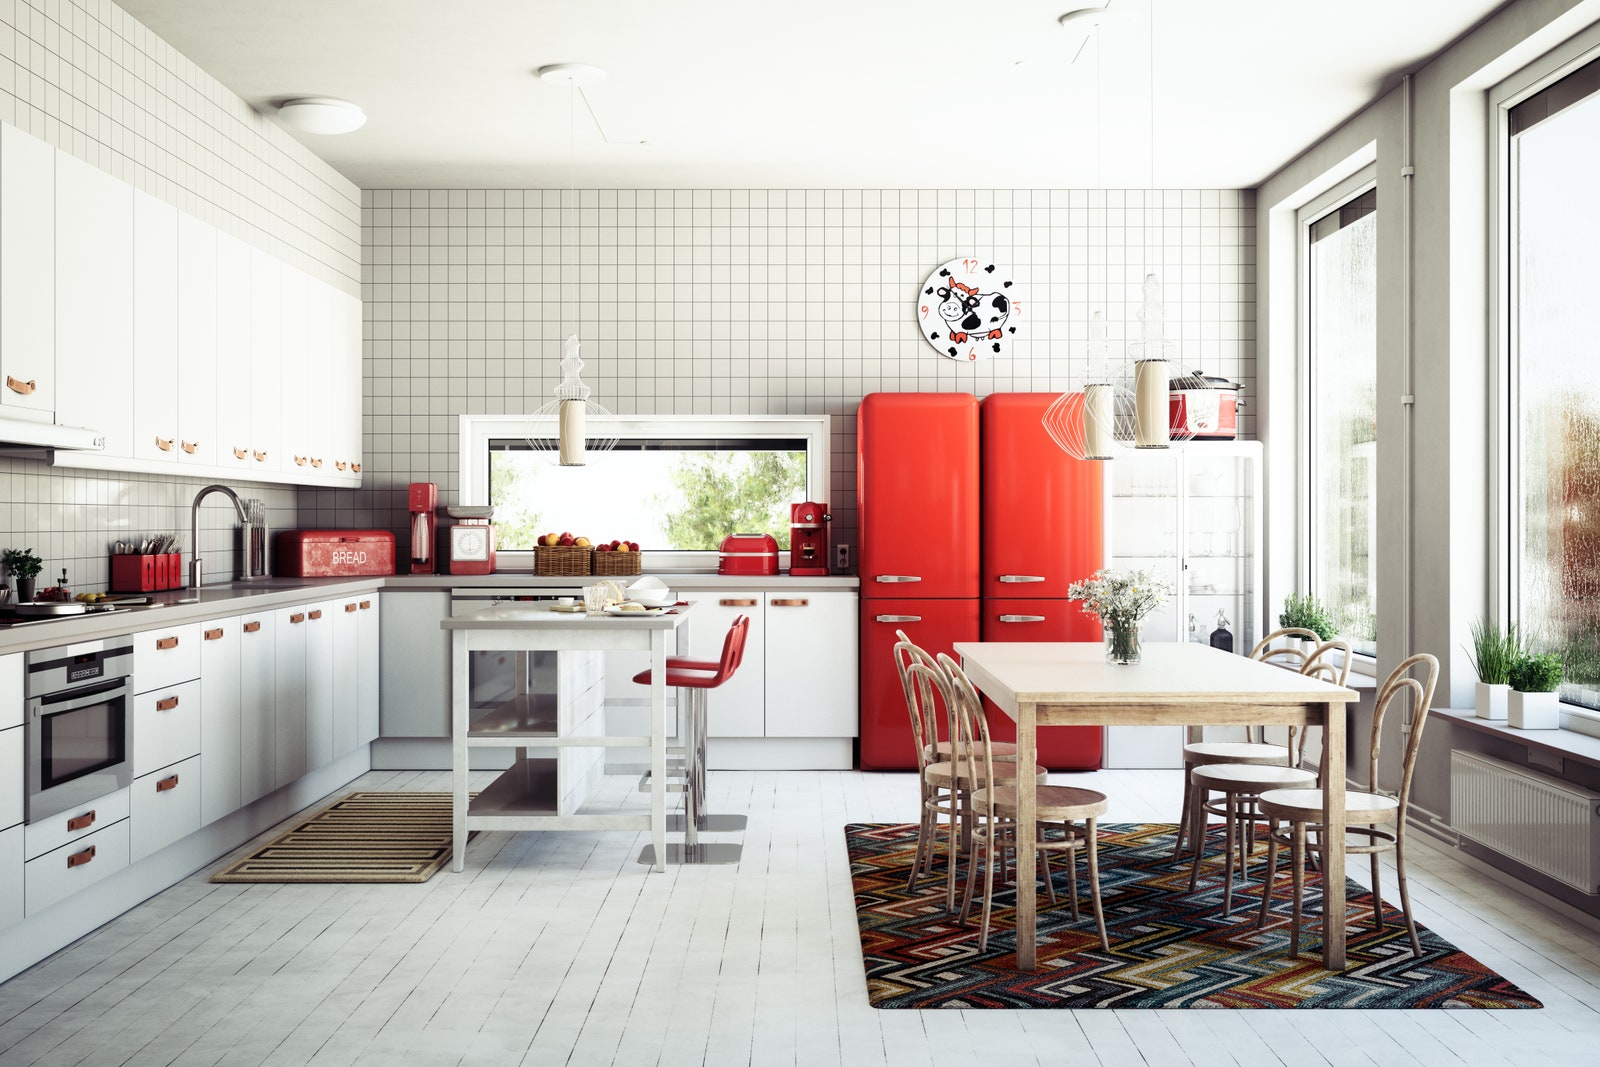 Không gian phòng bếp màu trắng tinh tế, nổi bật hơn nhờ thảm trải sàn và các đồ nội thất màu nóng